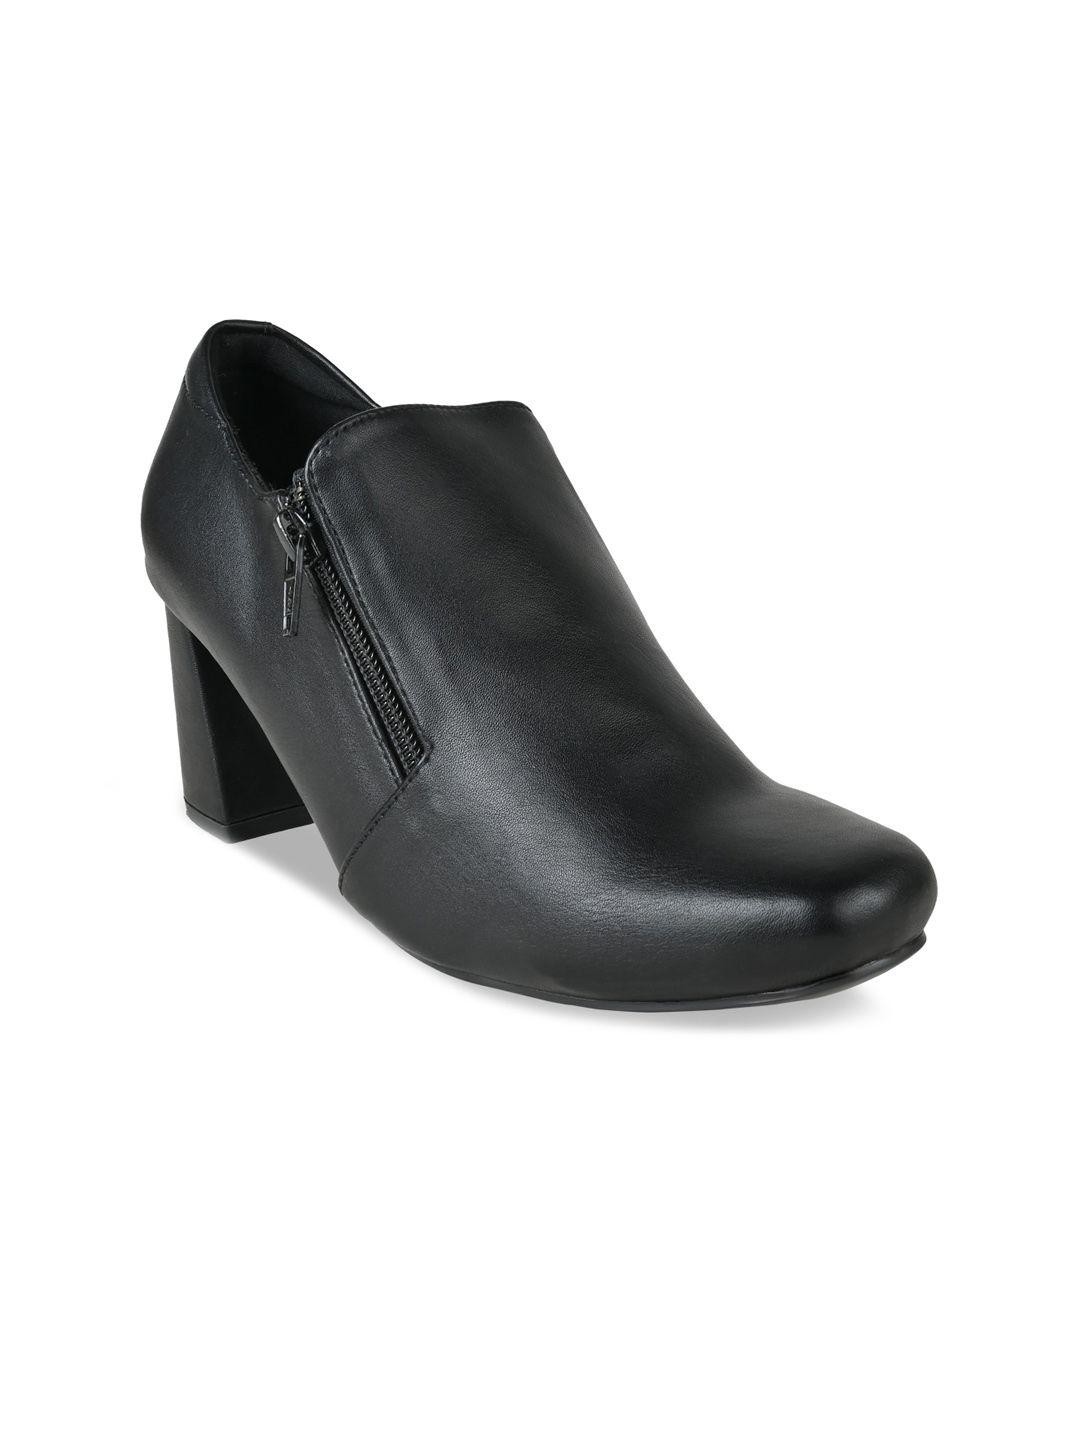 rocia women round toe block heel zip closure regular boots